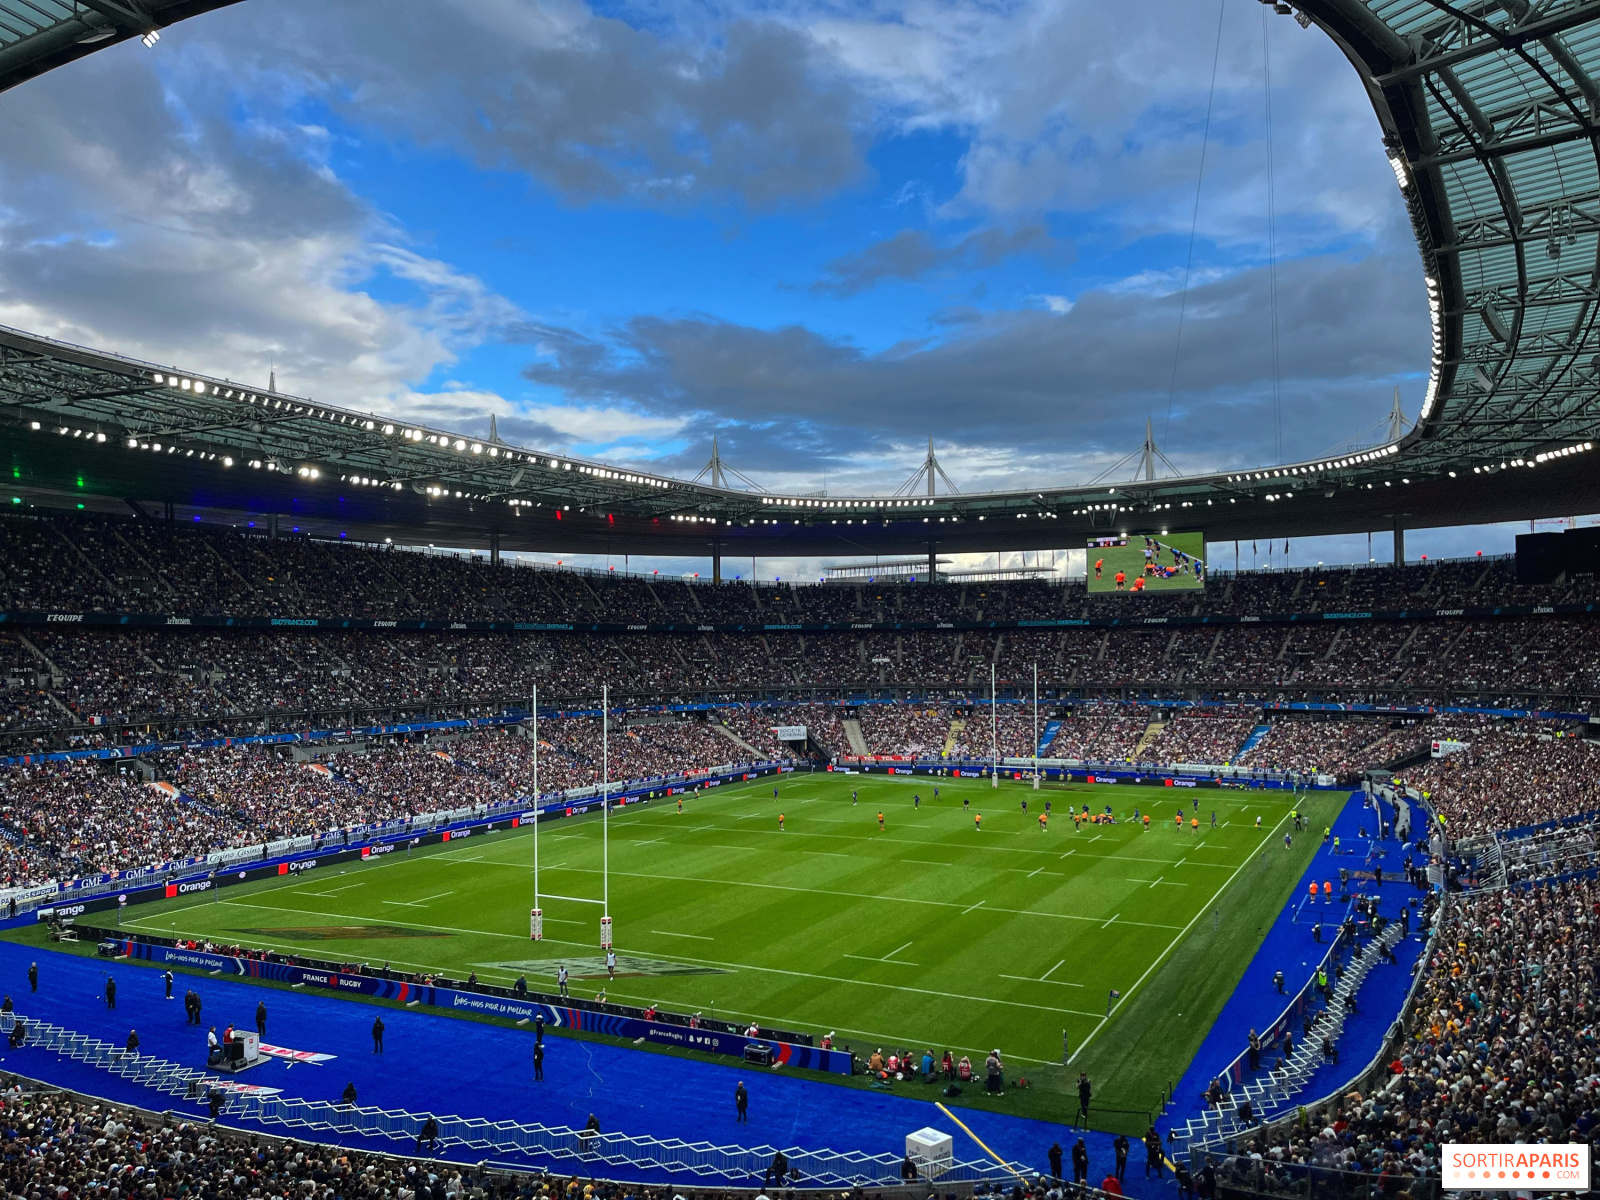 El Mundial de Rugby 2023 renueva la lucha por la gloria que solo